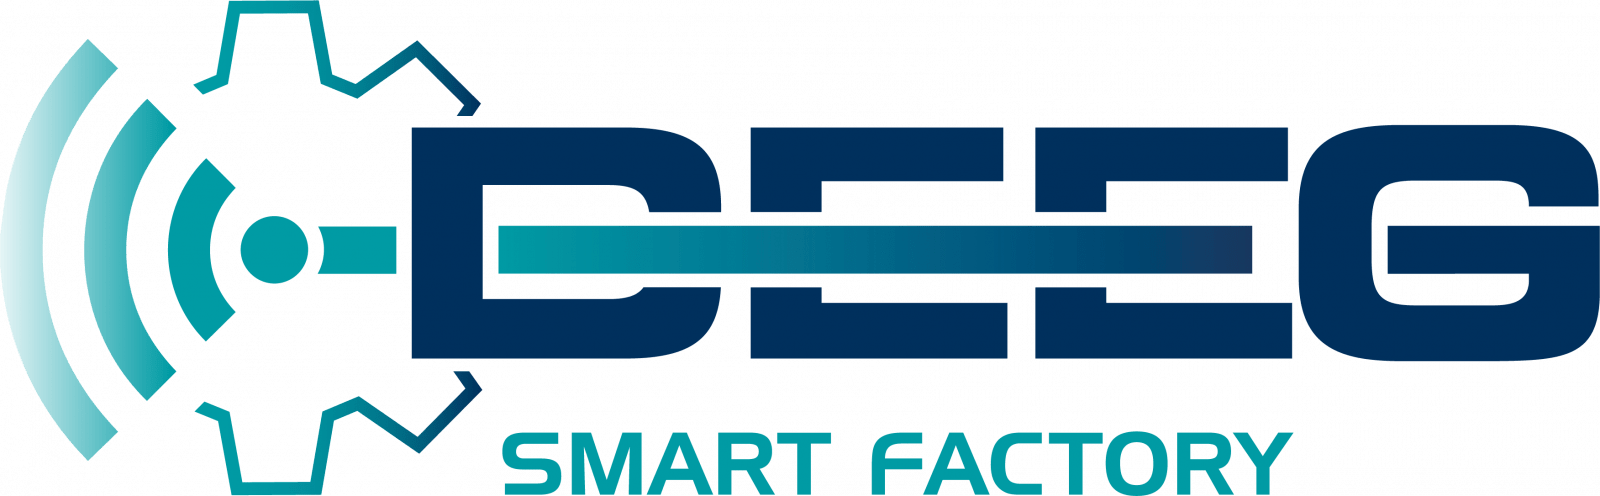 DEEG_Smart_Factory_logo